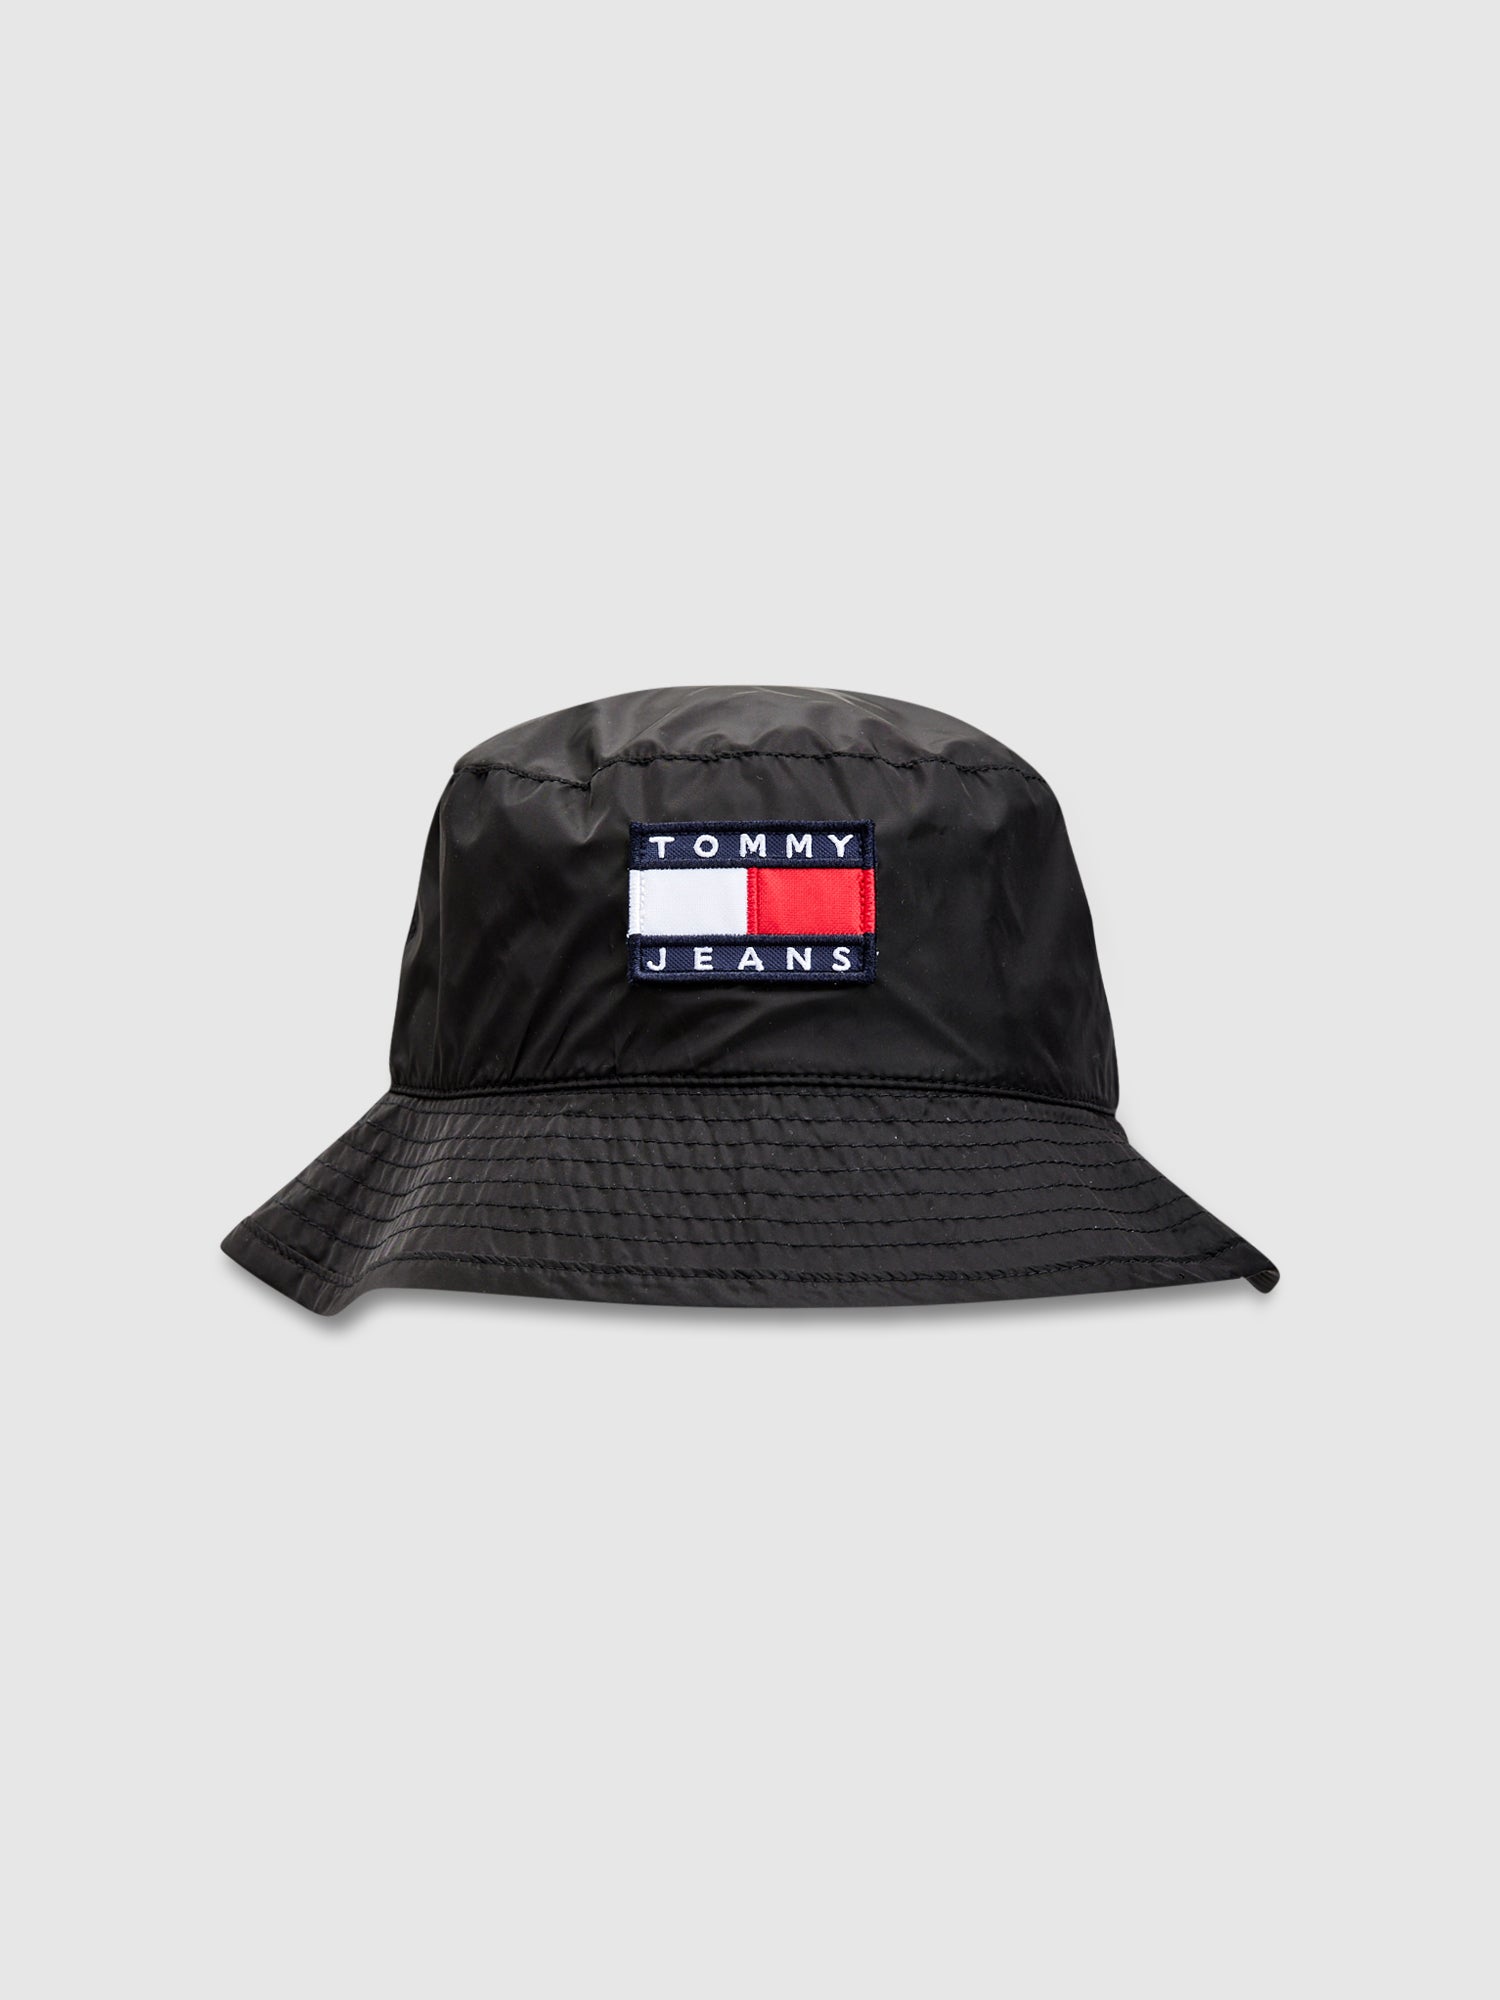 כובע באקט ניילון עם תווית לוגו / יוניסקס- Tommy Hilfiger|טומי הילפיגר